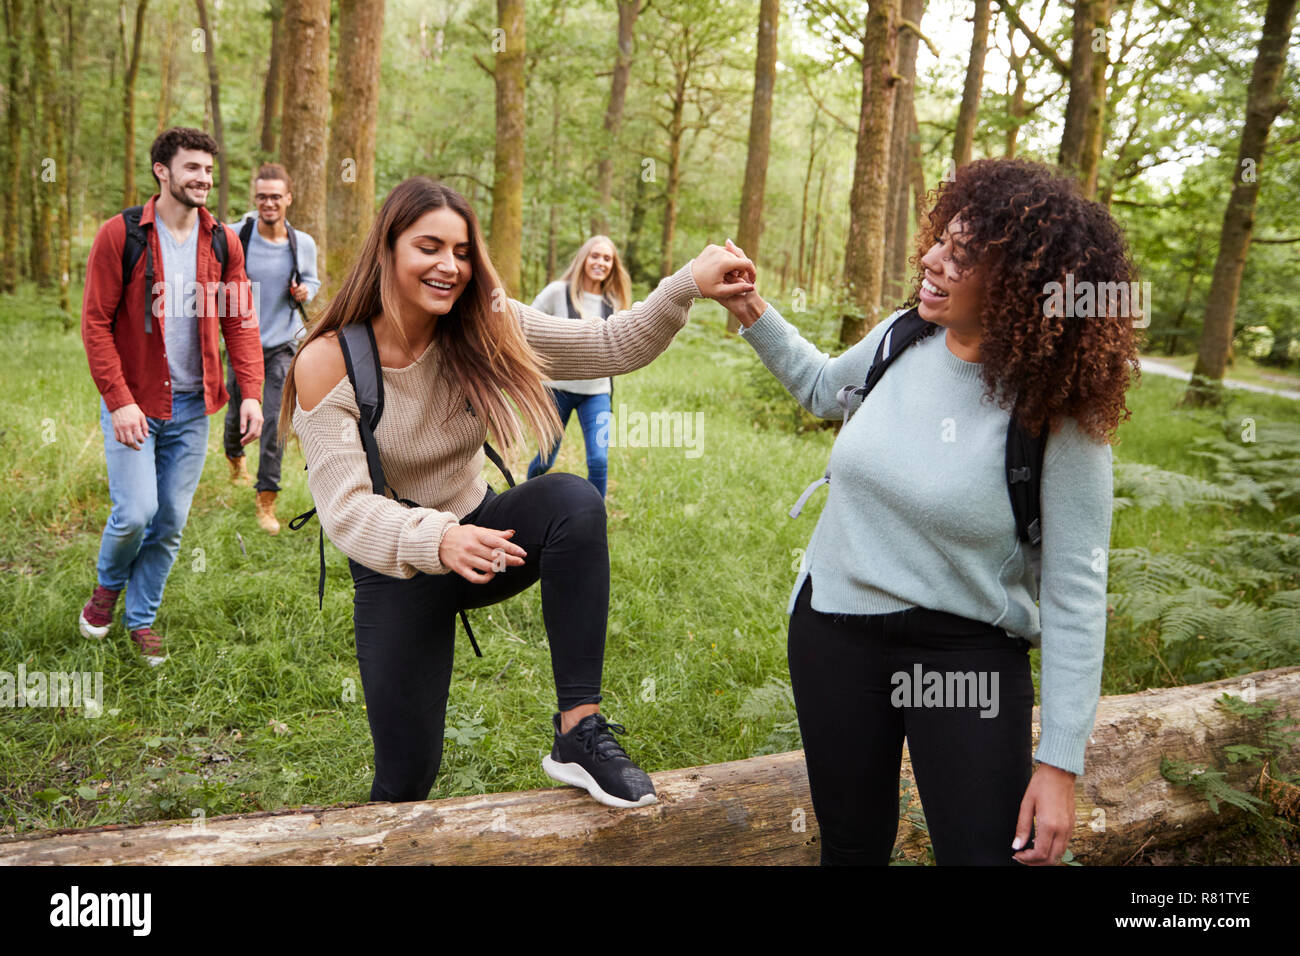 Junge Frau, Freundin Schritt über einen umgestürzten Baum während einer Wanderung mit Freunden in einem Wald Stockfoto